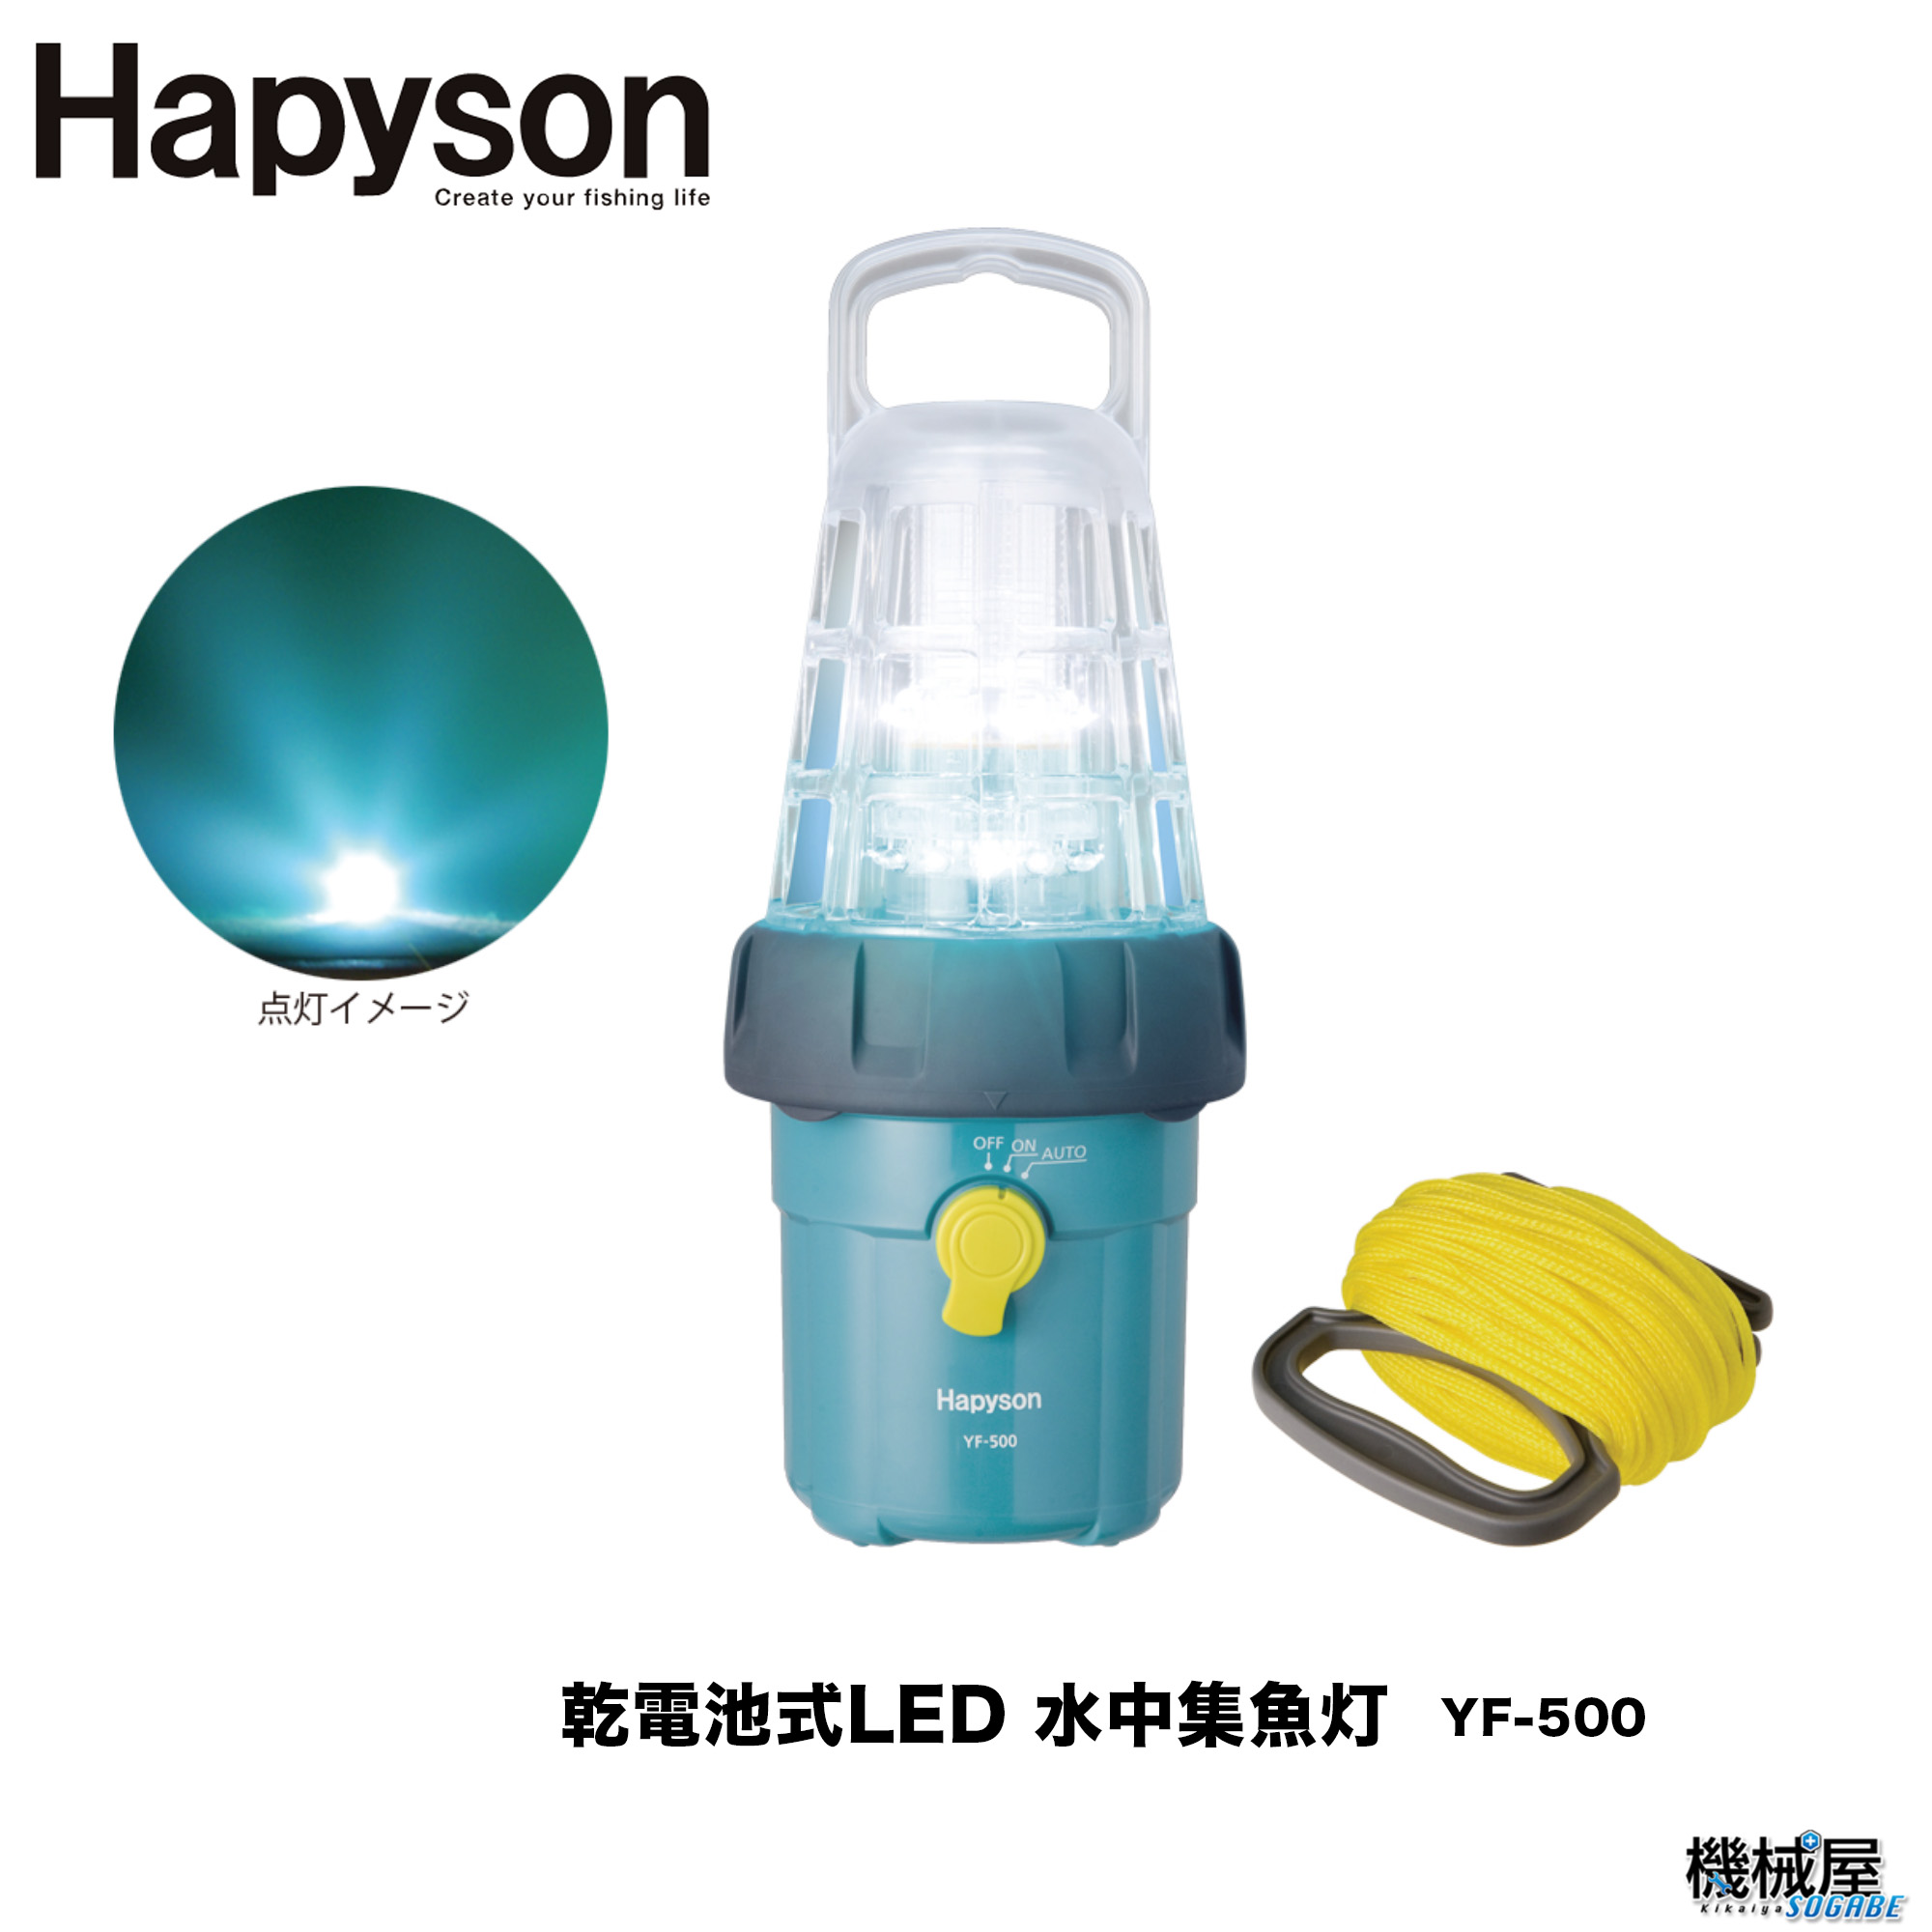 再追加販売 ハピソン(Hapyson) 乾電池式高輝度LED水中集魚灯 YF-501 